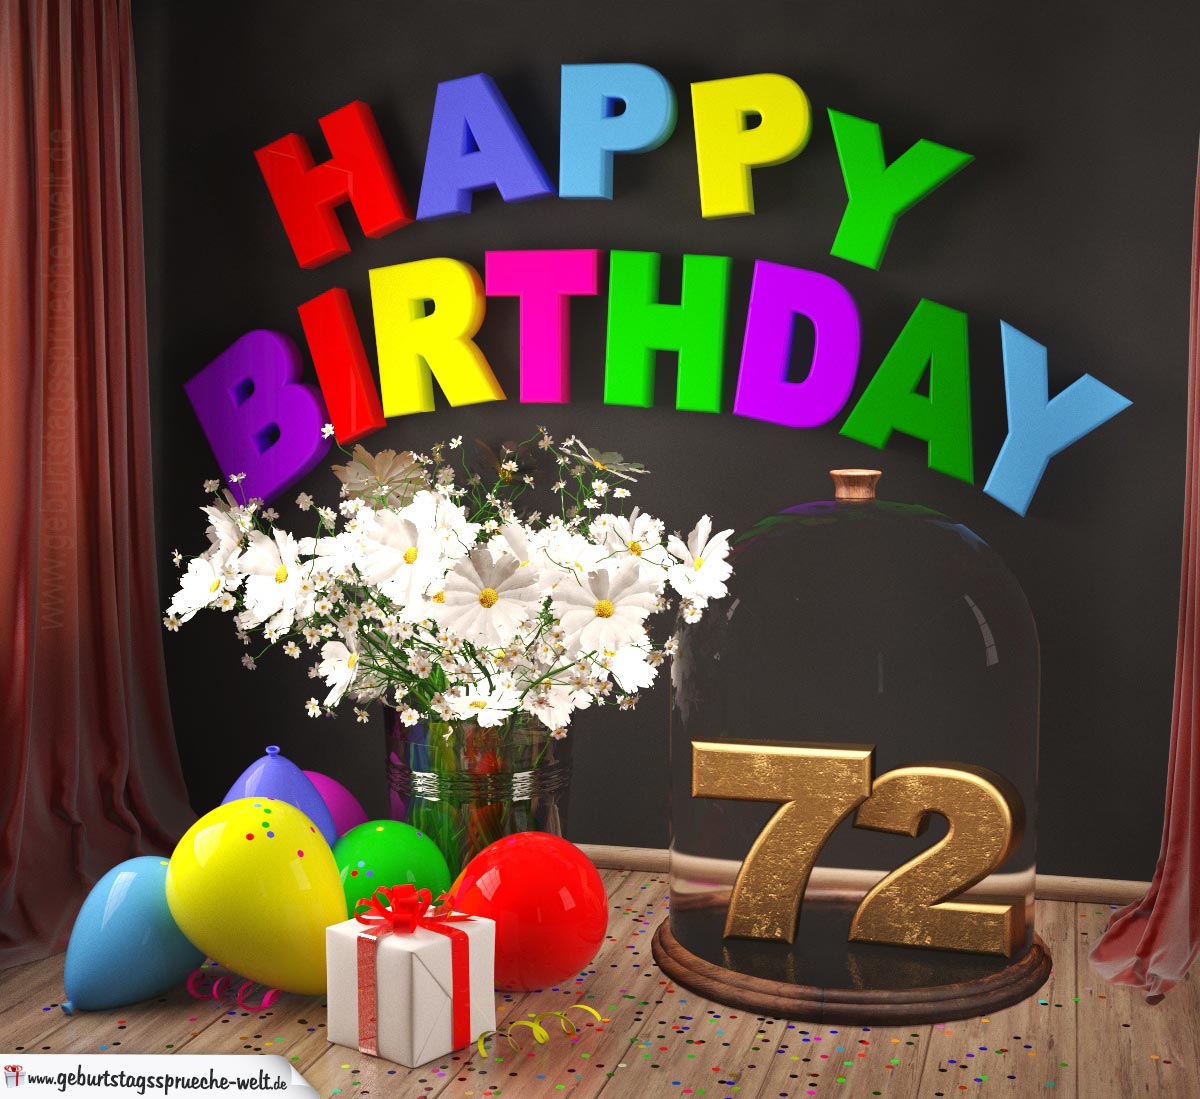 30++ Bilder und sprueche zum 77 geburtstag , Happy Birthday 72 Jahre Glückwunschkarte mit MargeritenBlumenstrauß, Luftballons und Geschenk